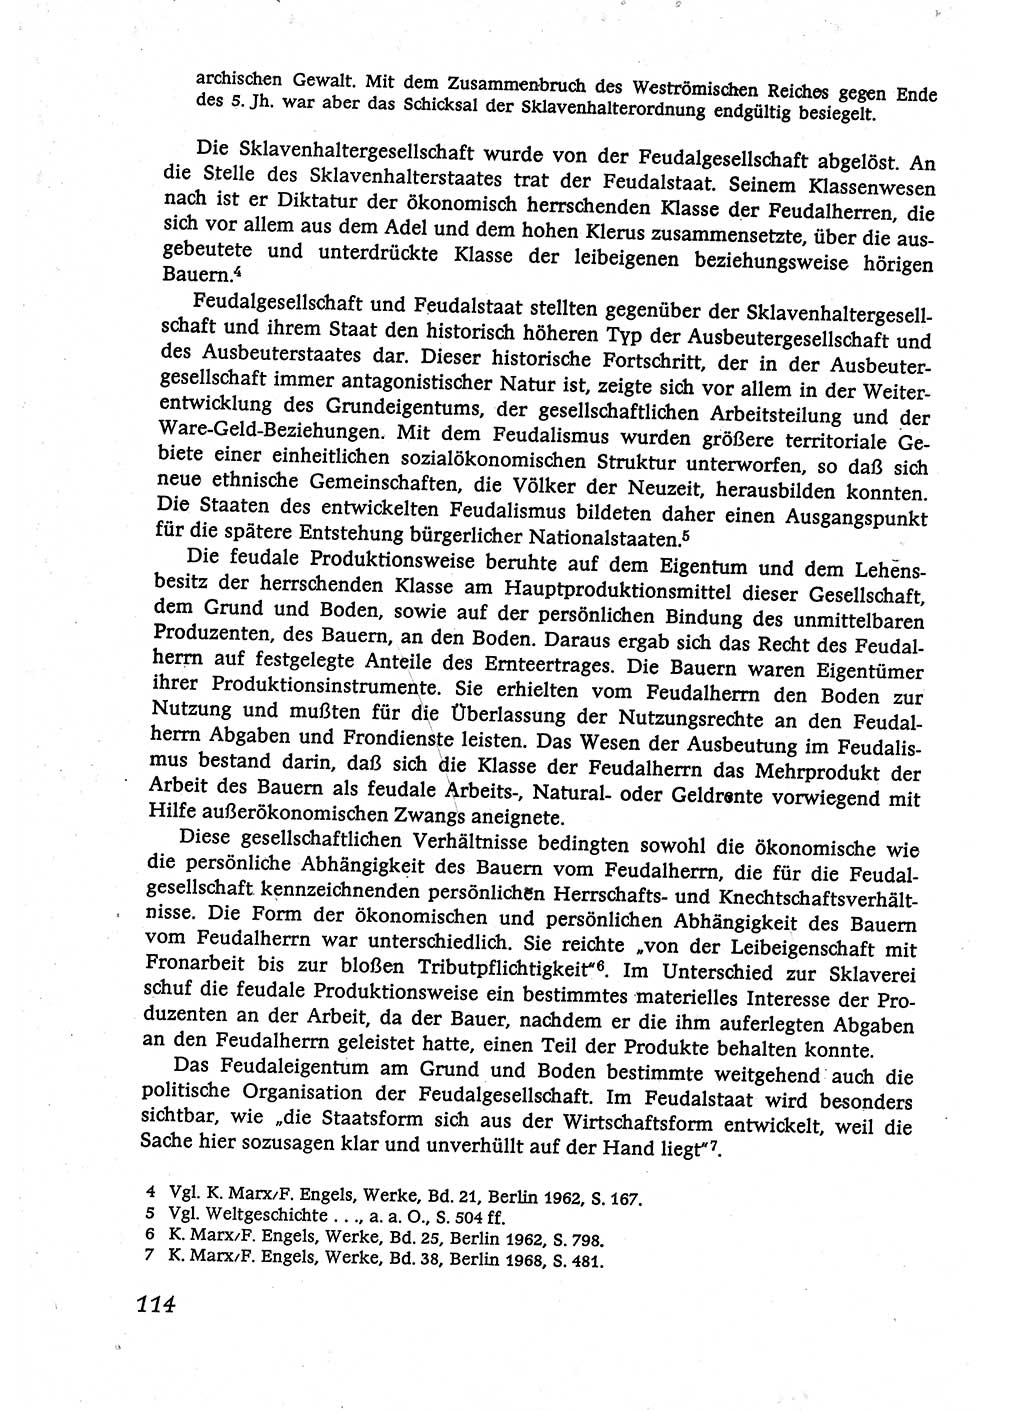 Marxistisch-leninistische (ML) Staats- und Rechtstheorie [Deutsche Demokratische Republik (DDR)], Lehrbuch 1980, Seite 114 (ML St.-R.-Th. DDR Lb. 1980, S. 114)